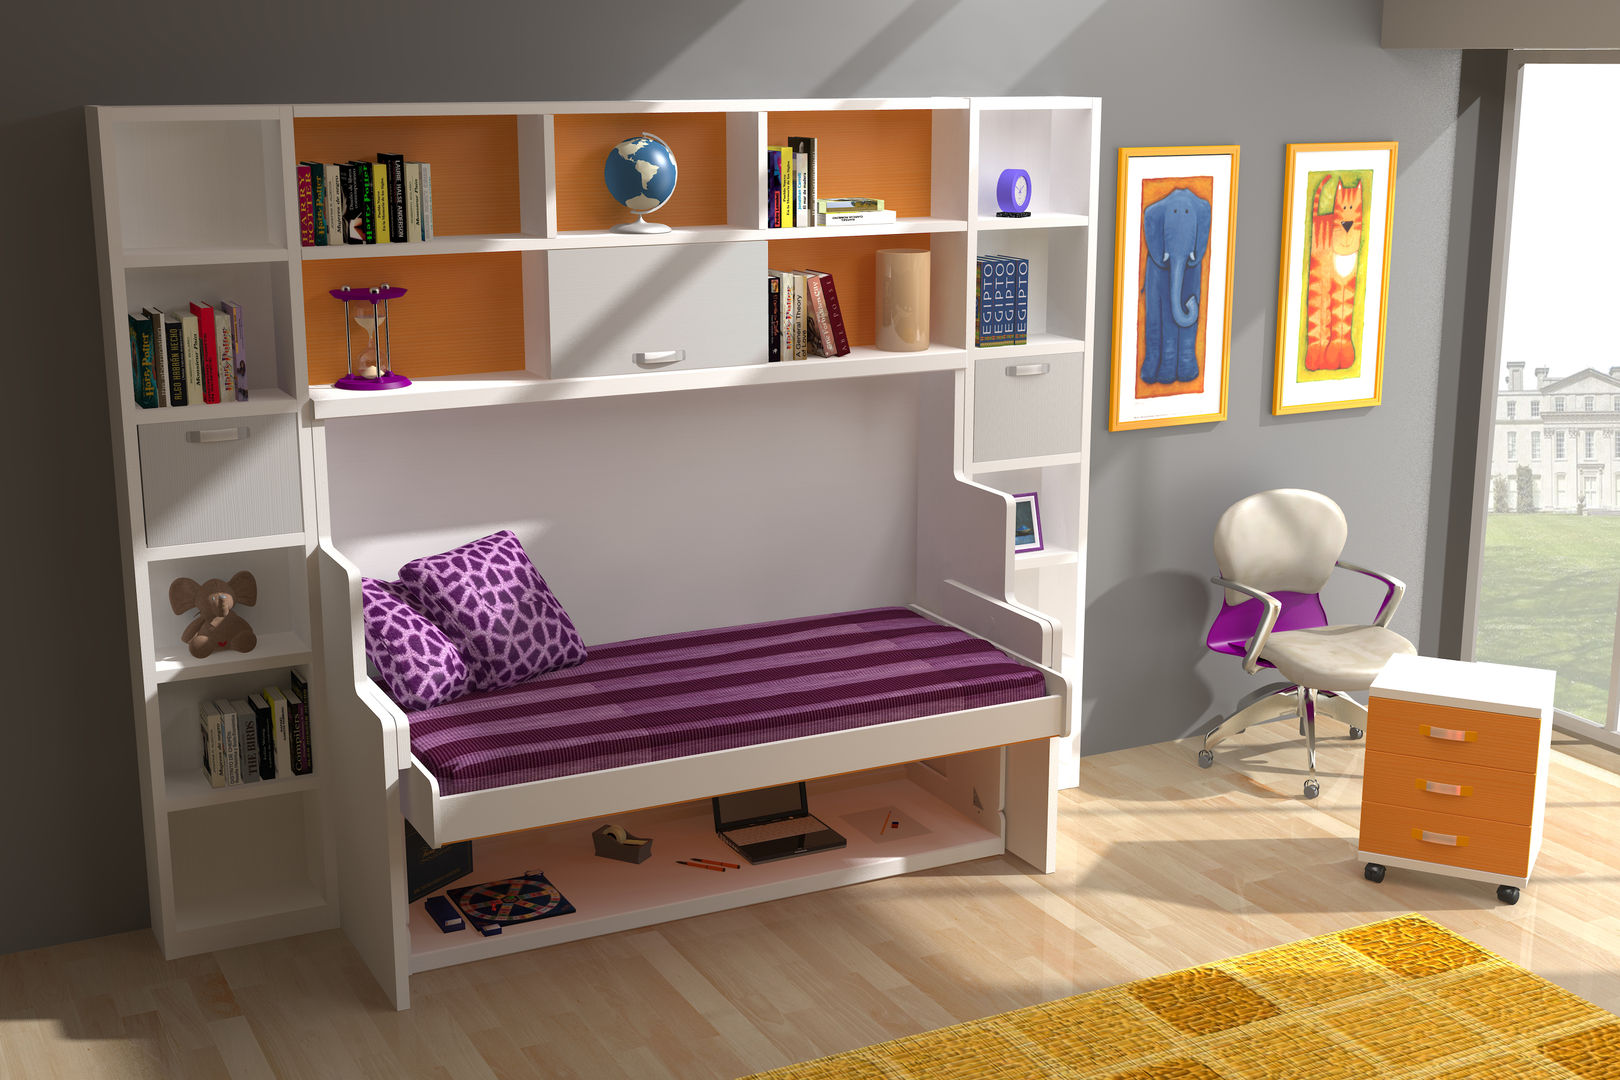 Mesa, Cama y Escritorio Plegables: Muebles para espacios juveniles reducidos, Muebles Parchis. Dormitorios Juveniles. Muebles Parchis. Dormitorios Juveniles.